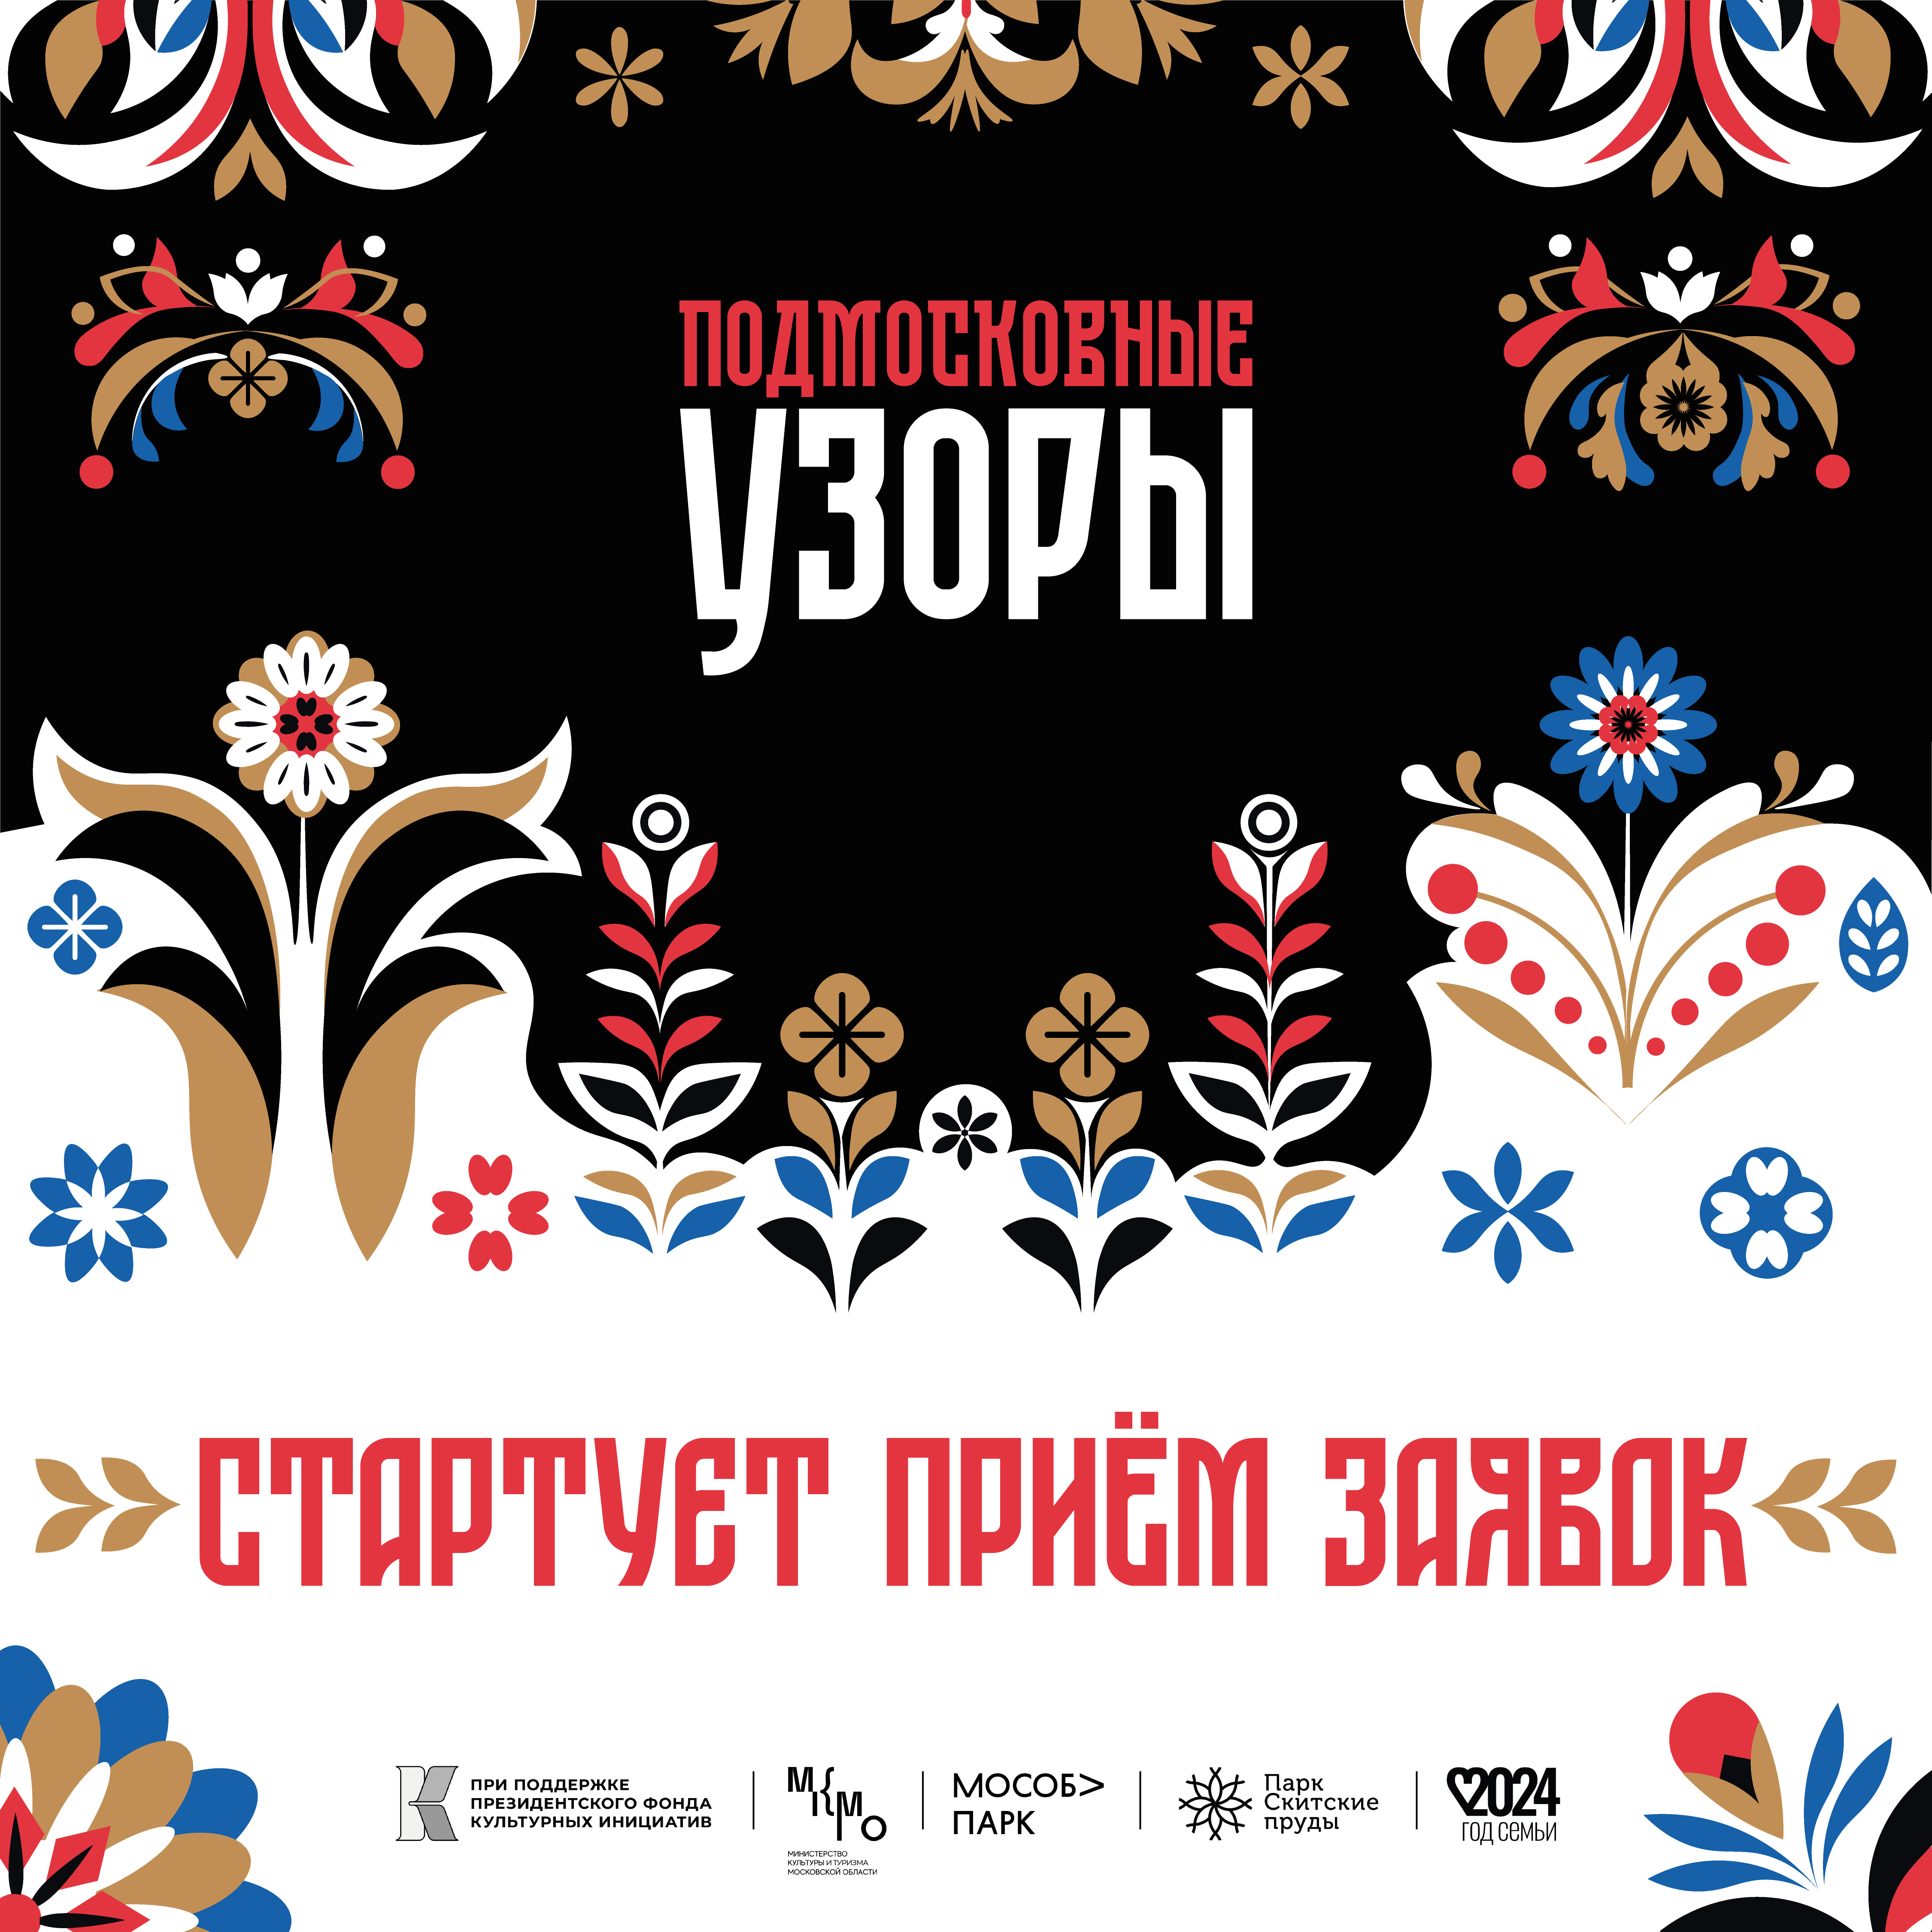 В Подмосковье 25 мая впервые пройдет фестиваль народного творчества «Подмосковные узоры»